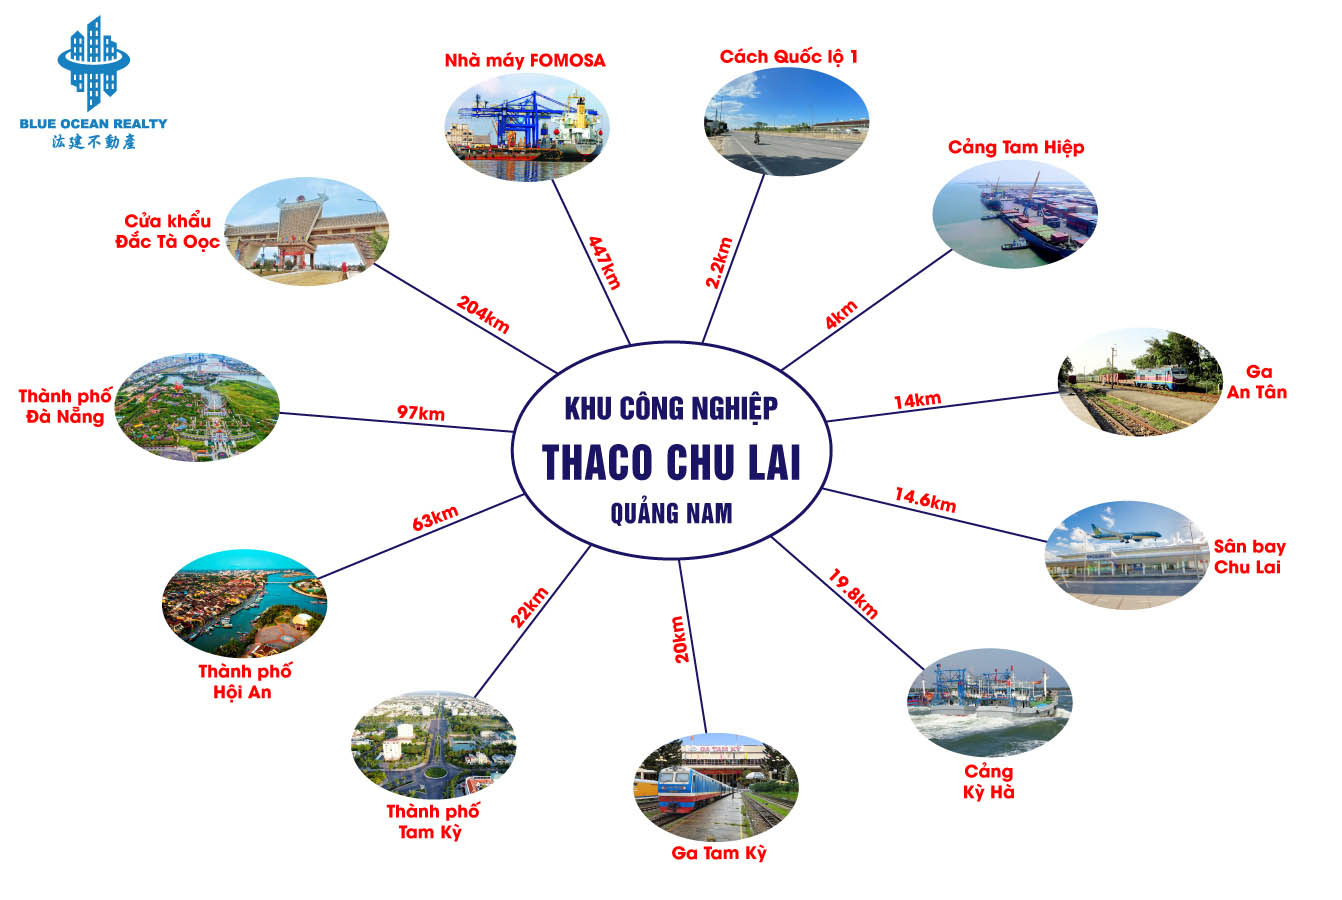 Khu công nghiệp Thaco Chu Lai - Quảng Nam